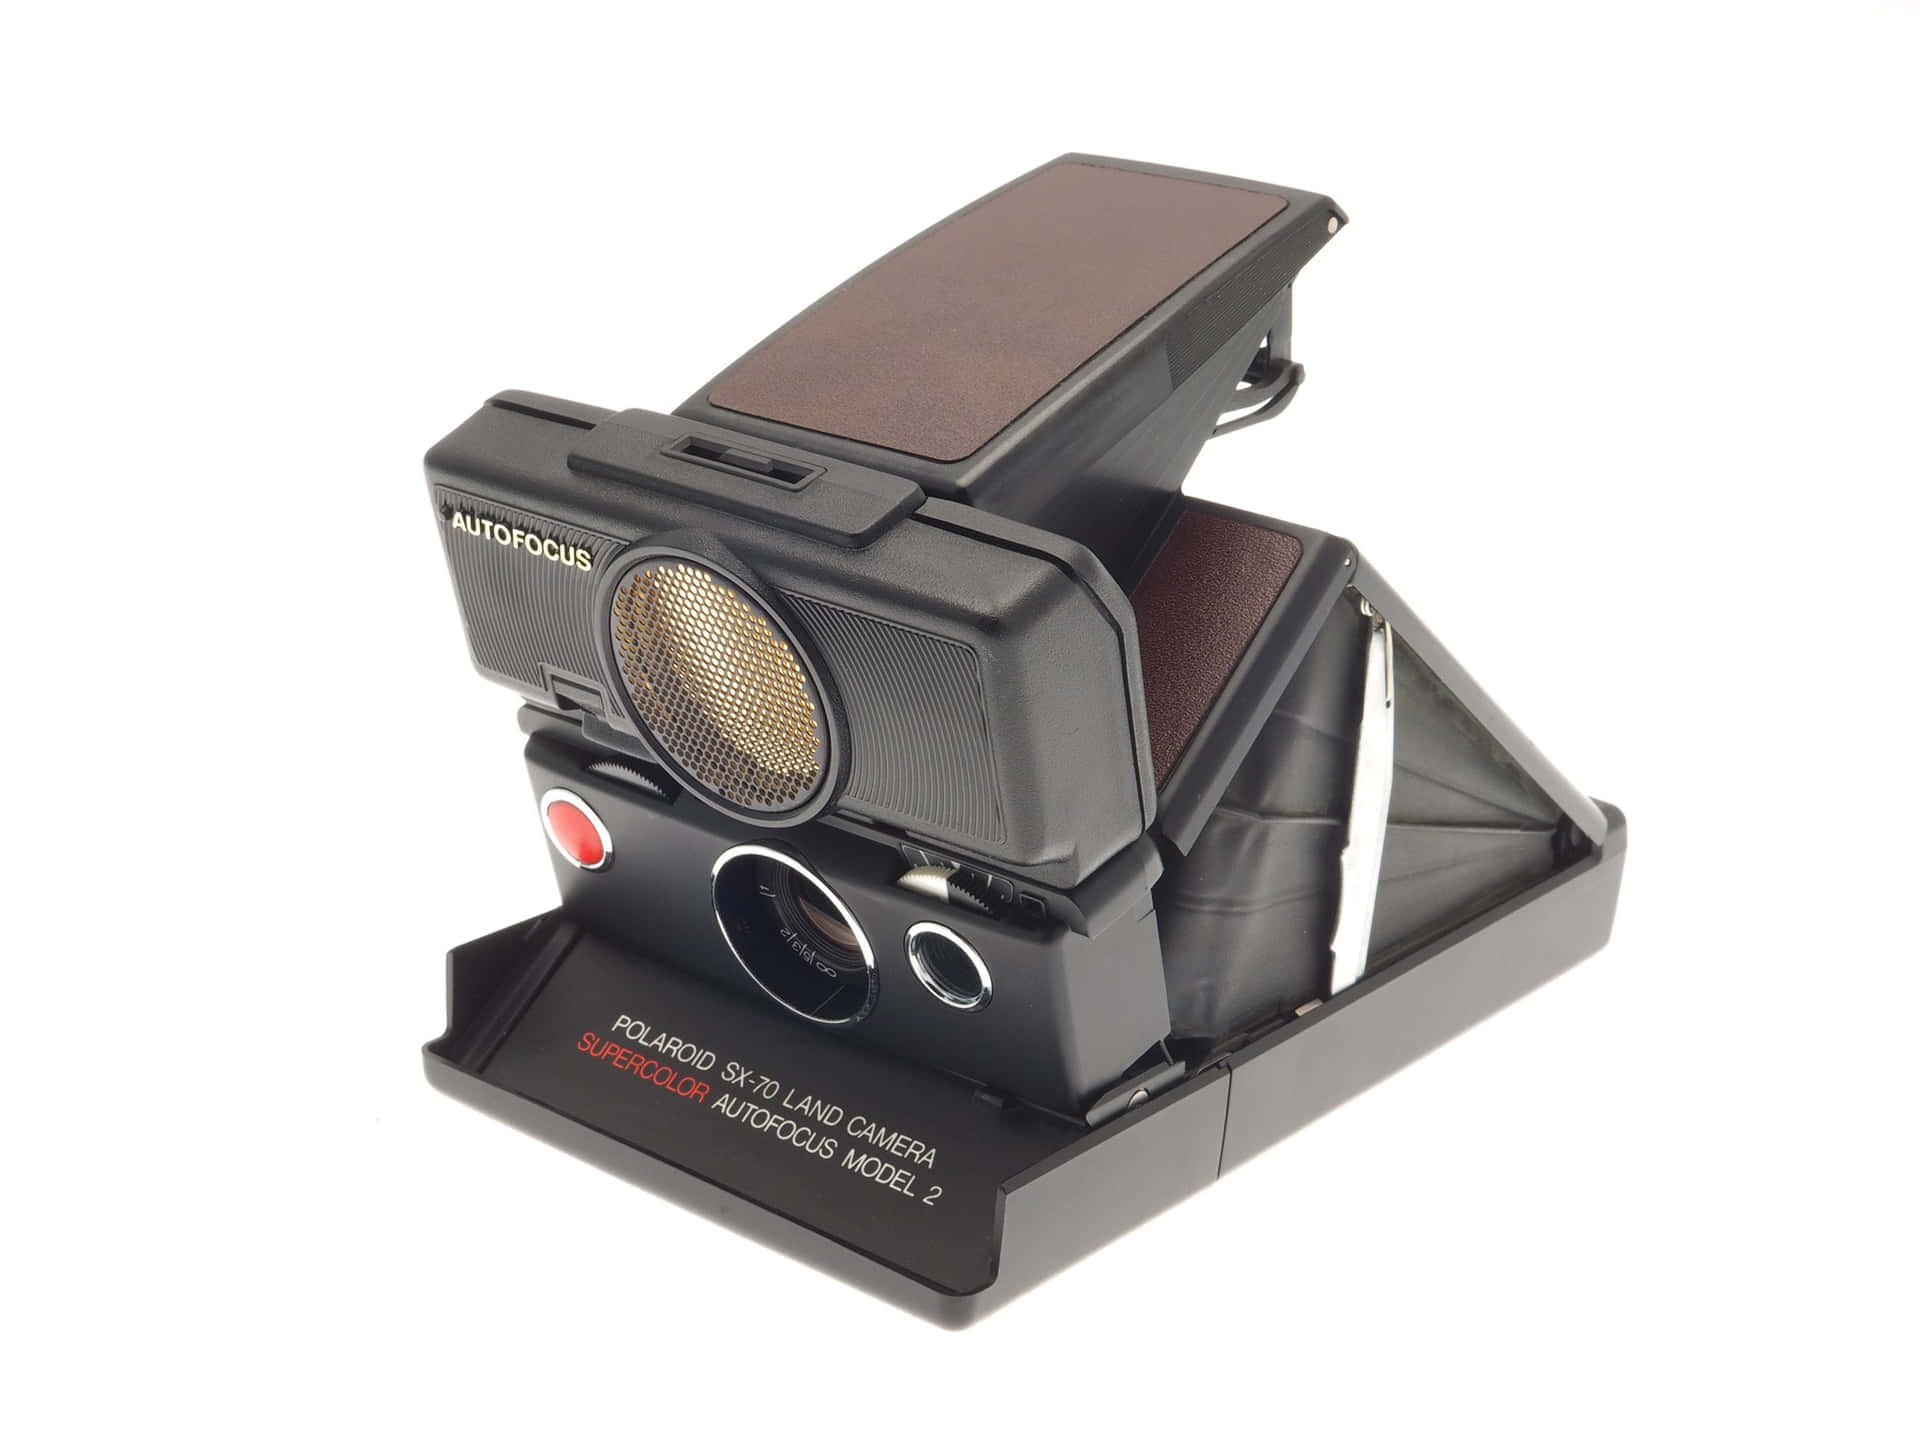 Imagende Una Cámara Vintage Polaroid Con Enfoque Automático.